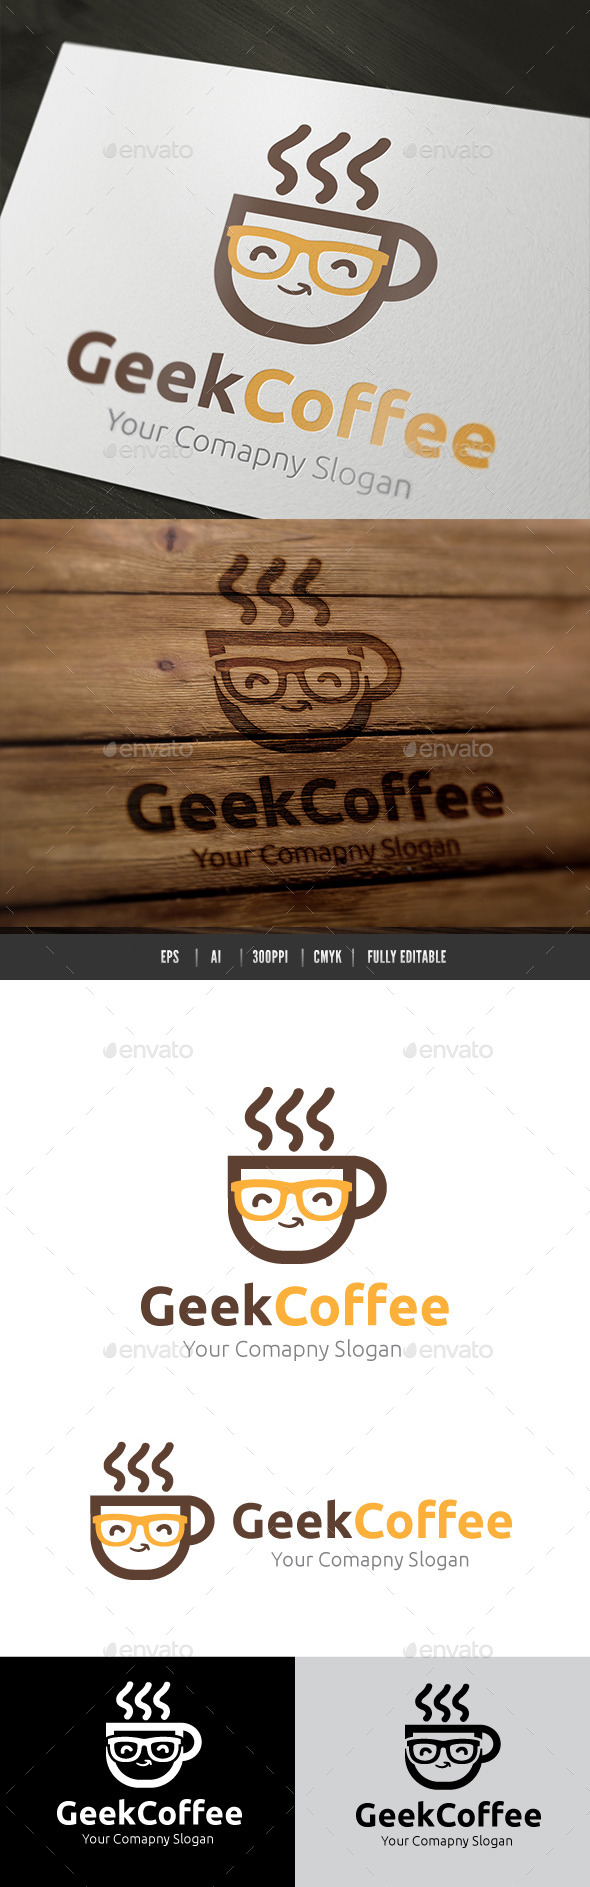 Geek Coffee